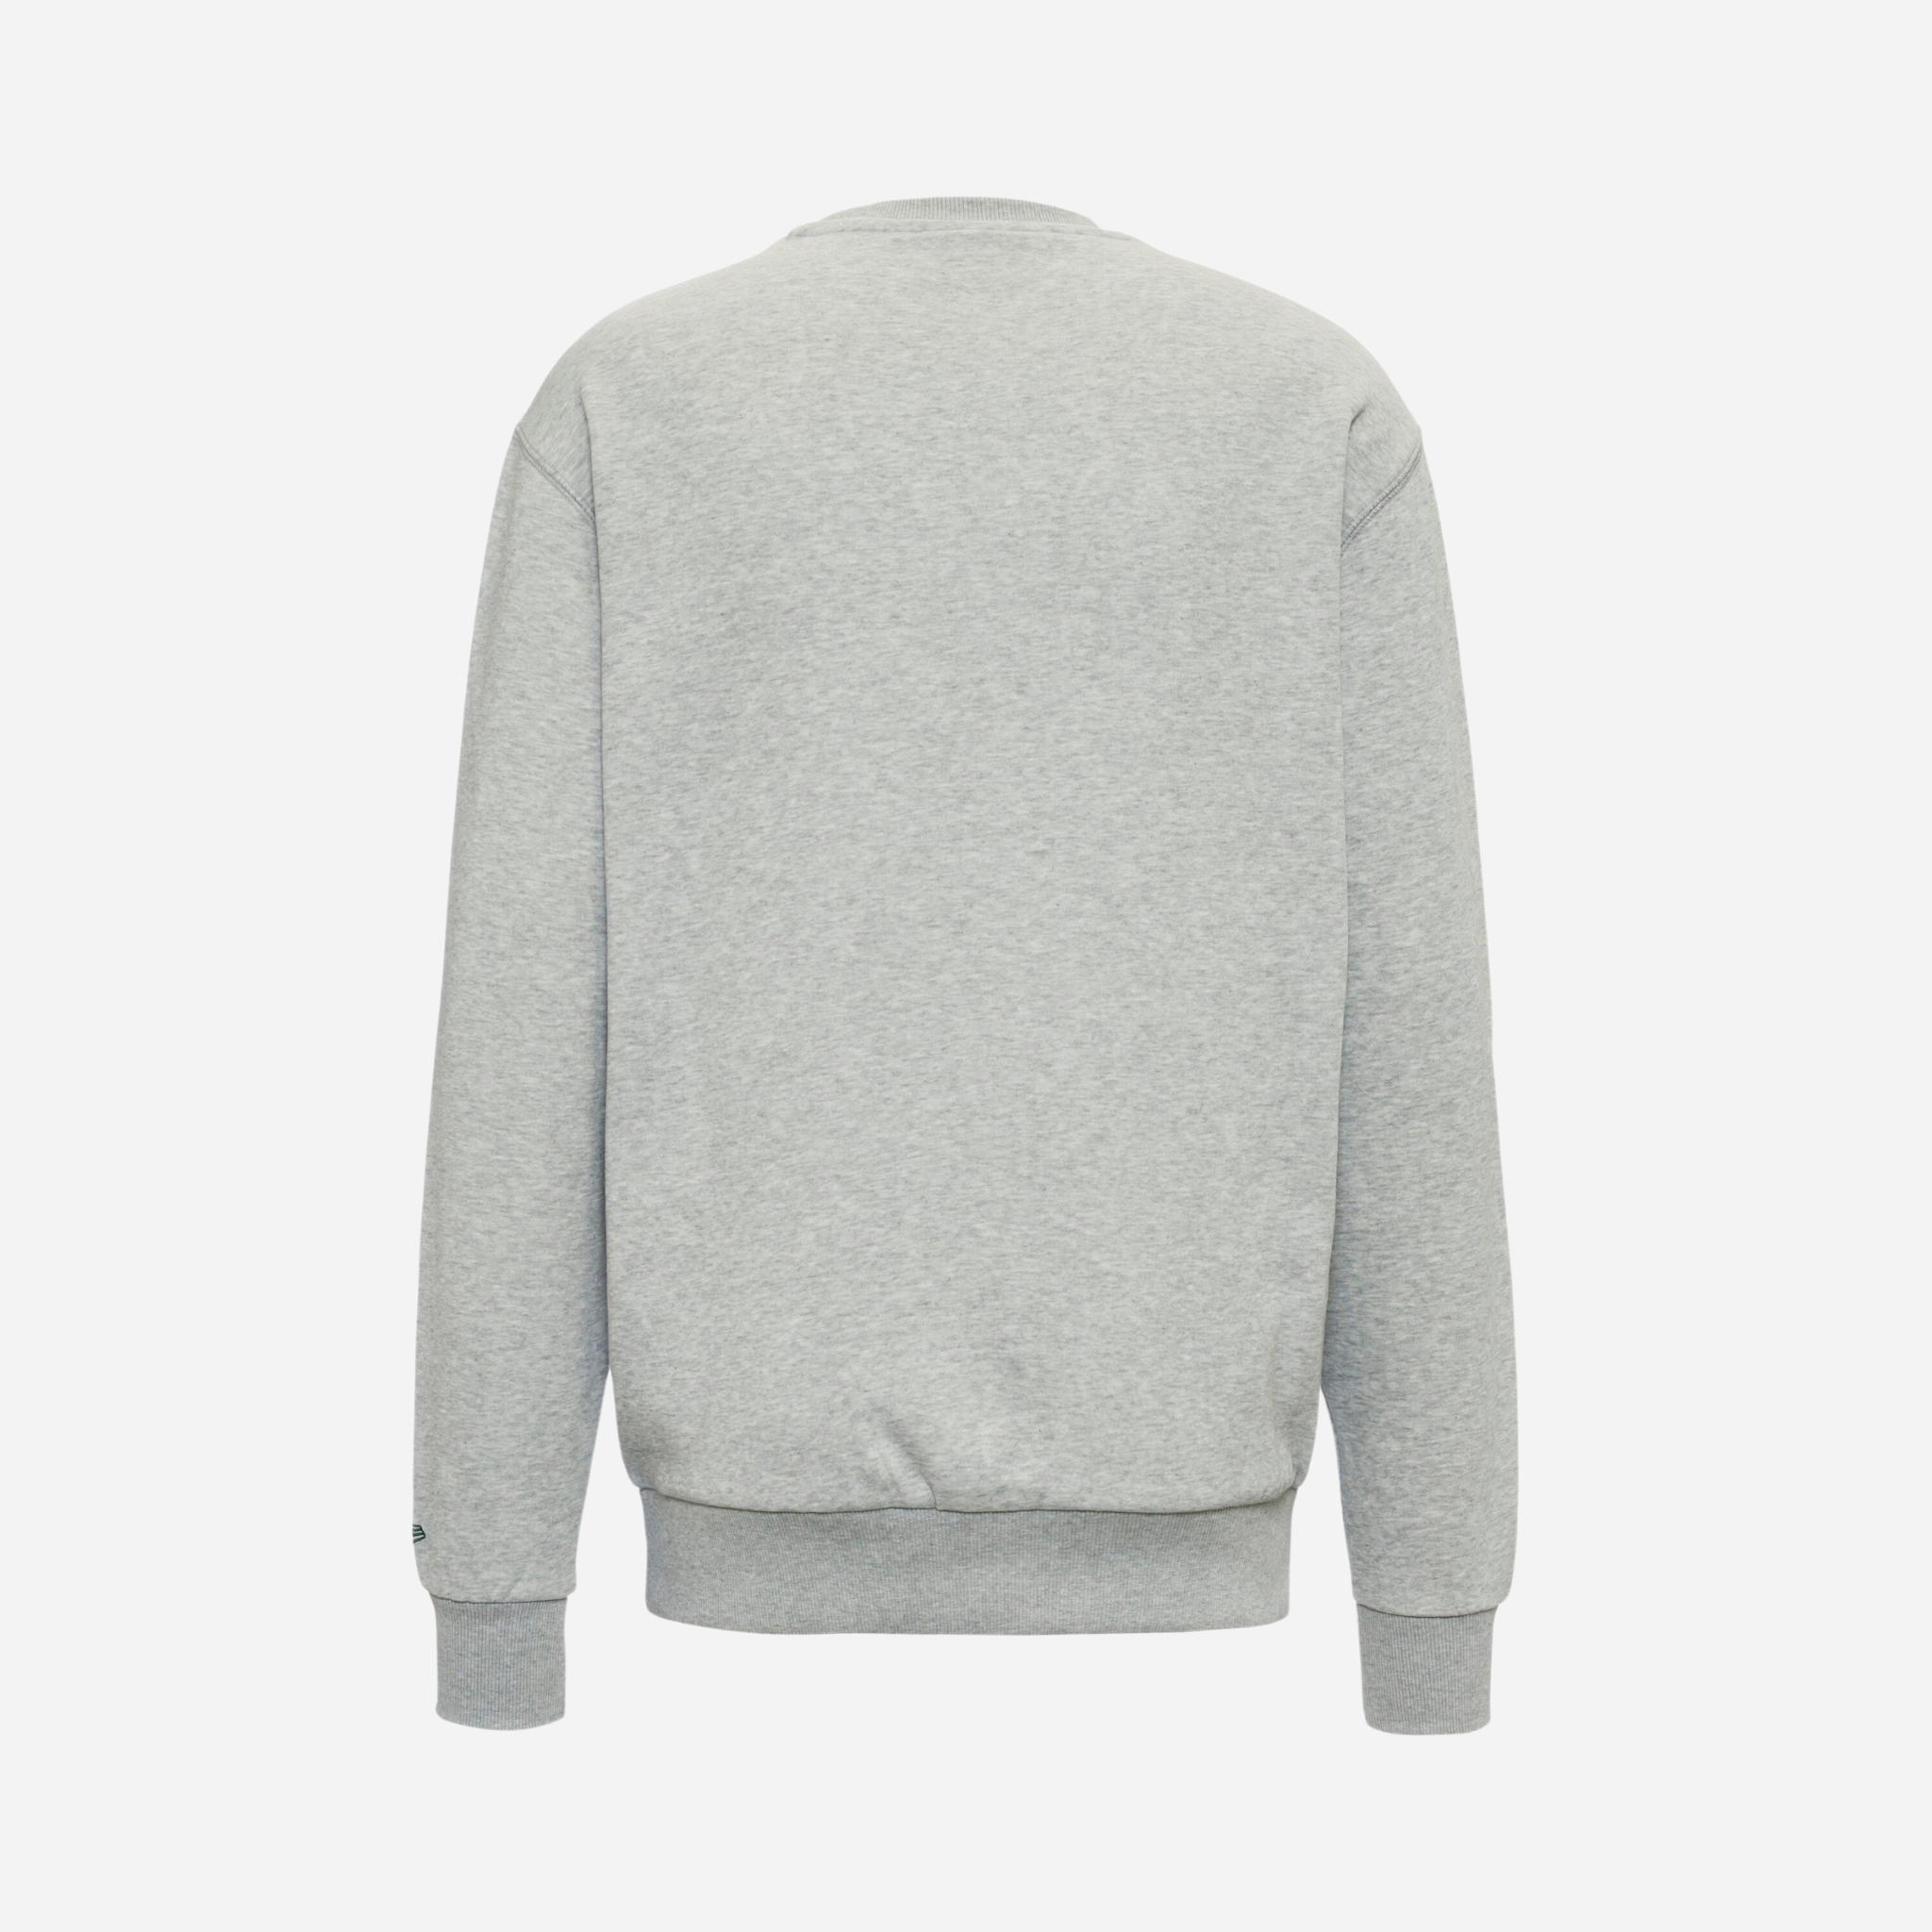 New Era Heritage Sweatshirt Grey